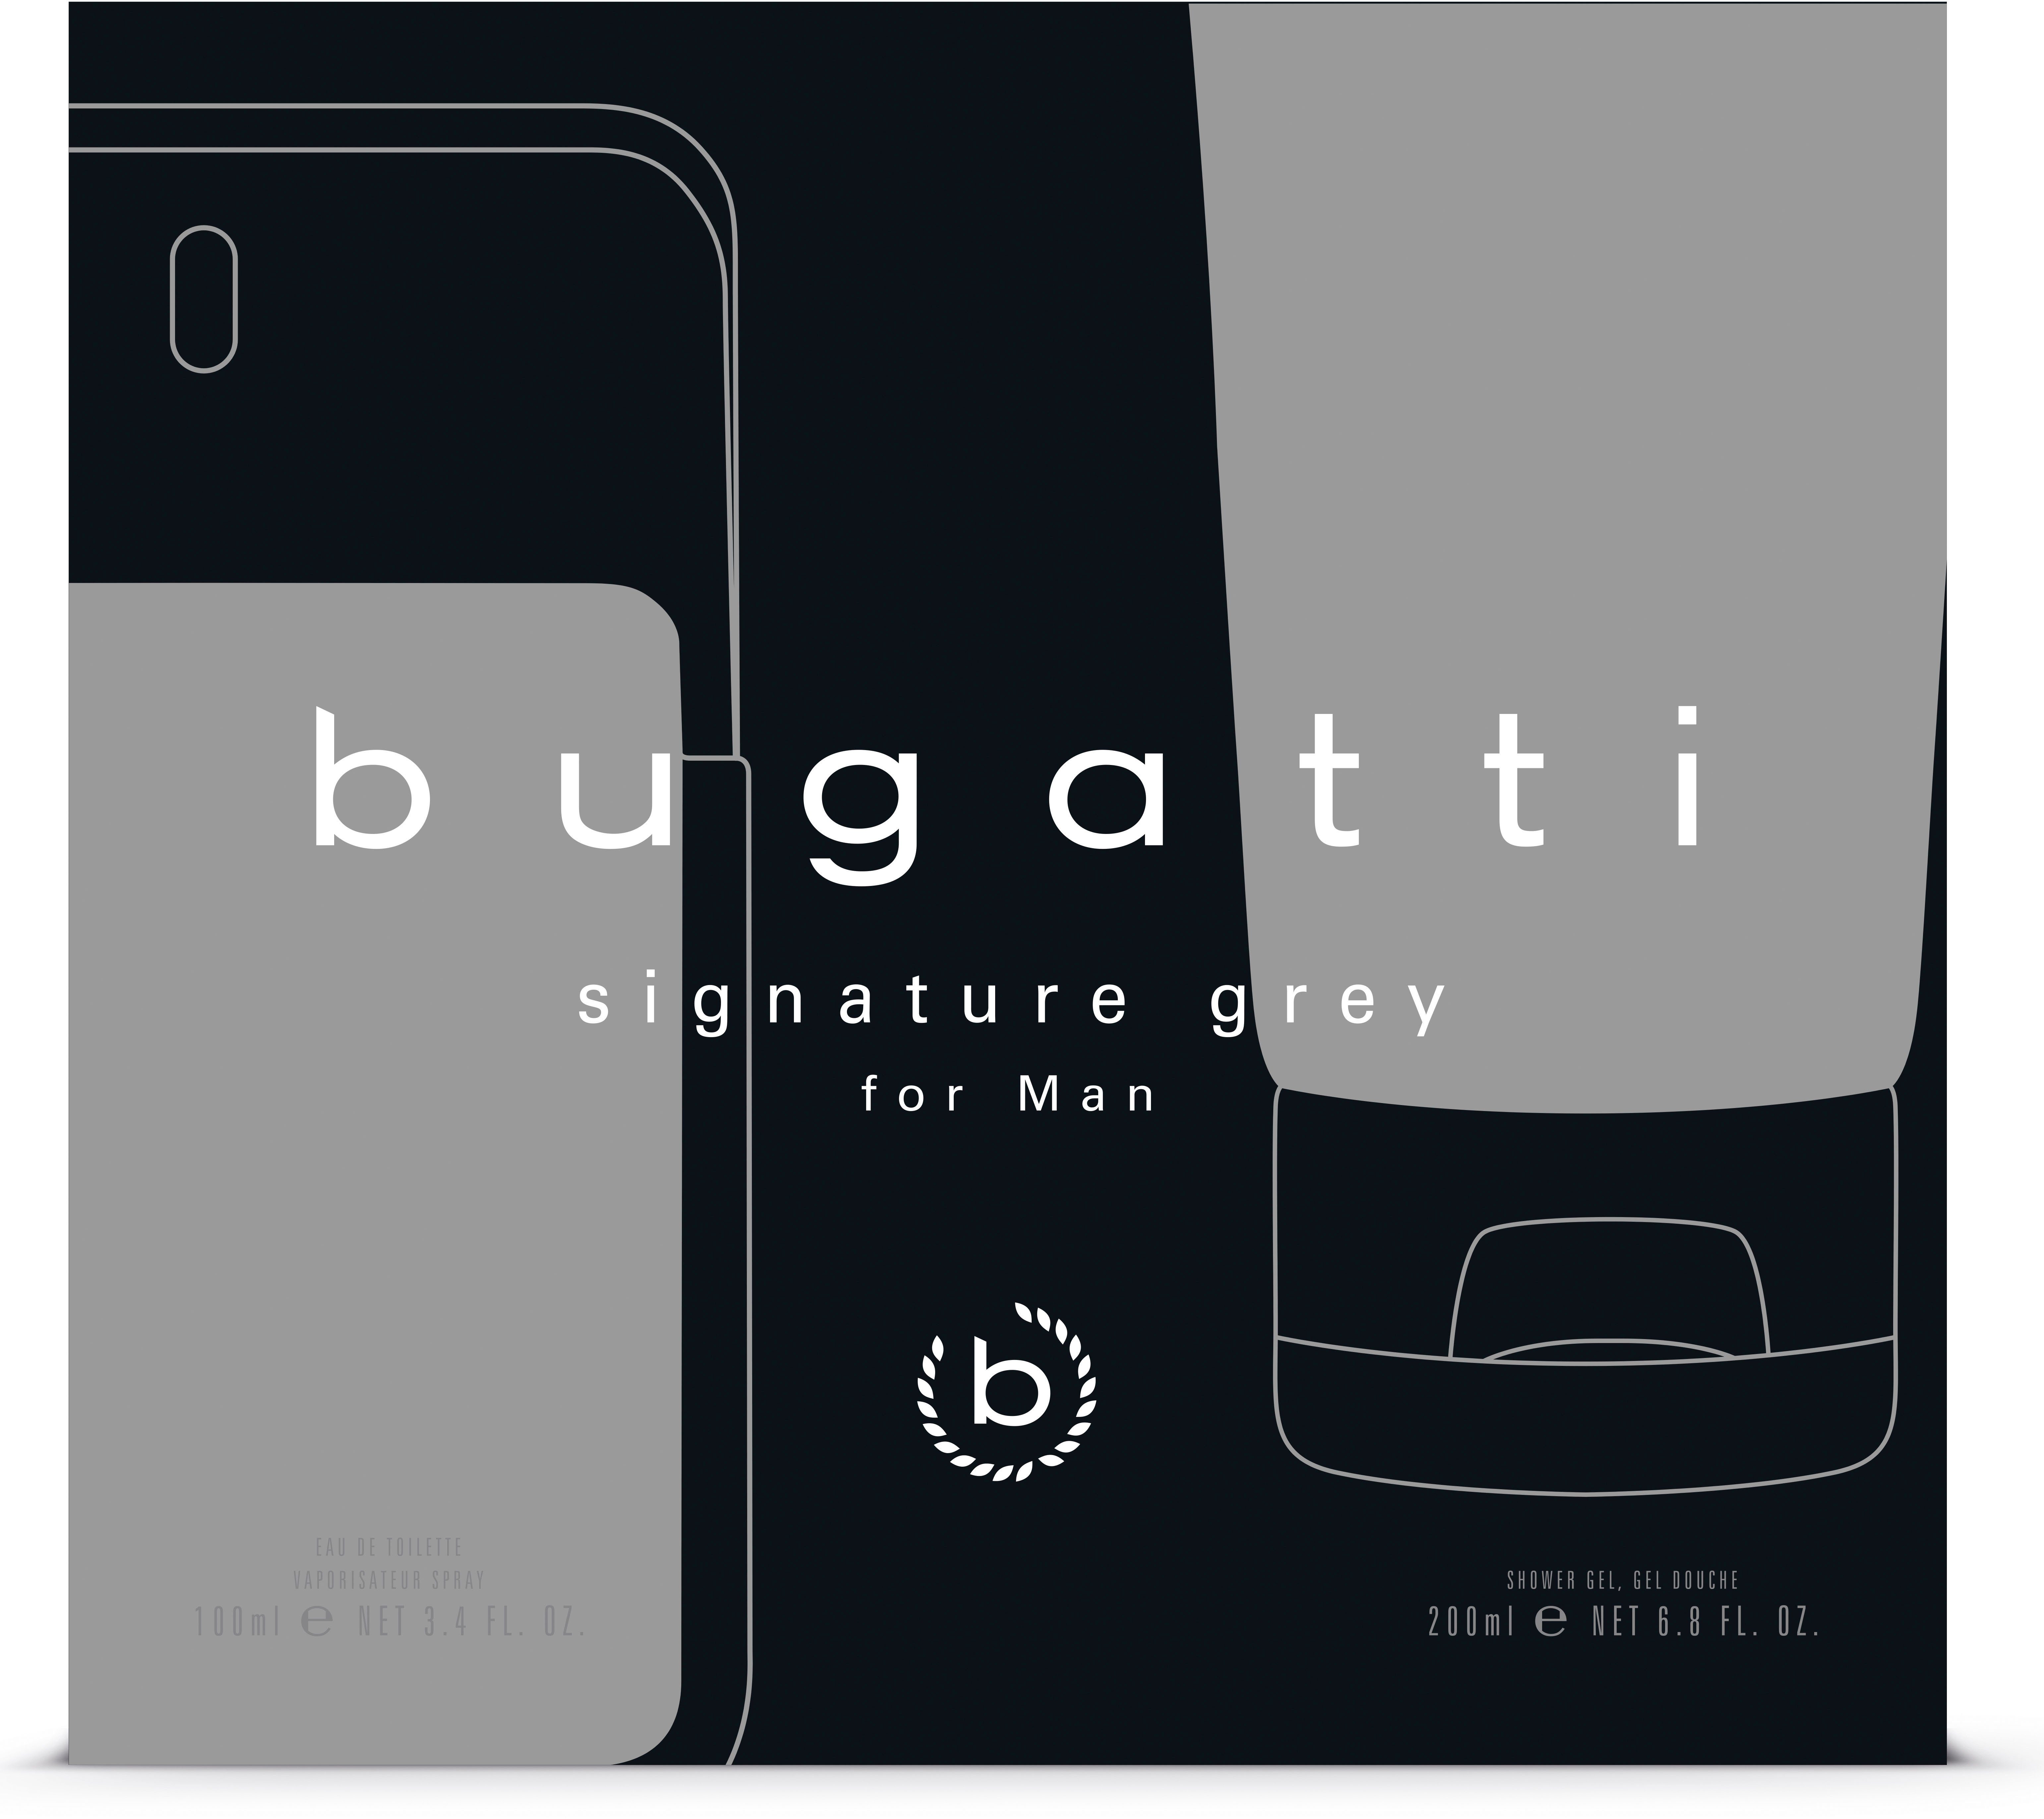 signature bugatti bugatti + SG, 100ml man de grey Eau ml 200 Toilette 2-tlg. GP EDT